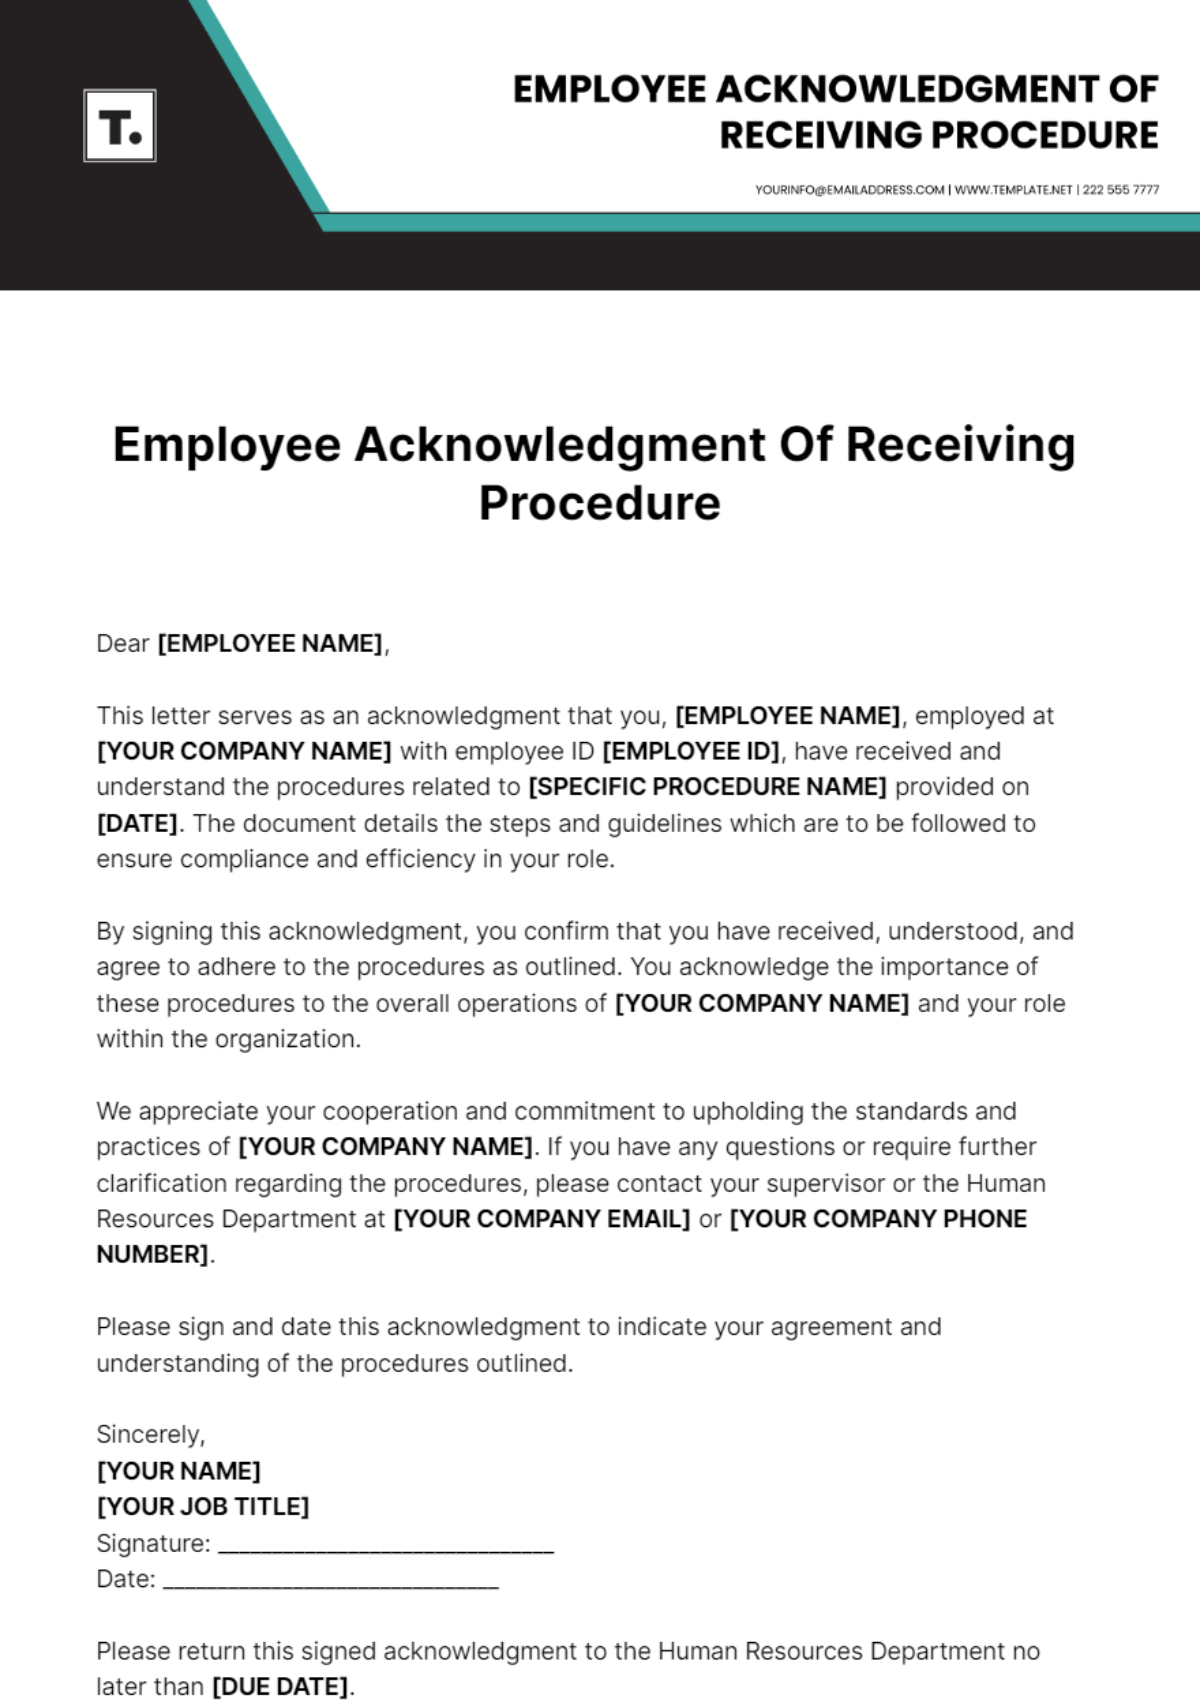 Employee Acknowledgment Of Receiving Procedure Template